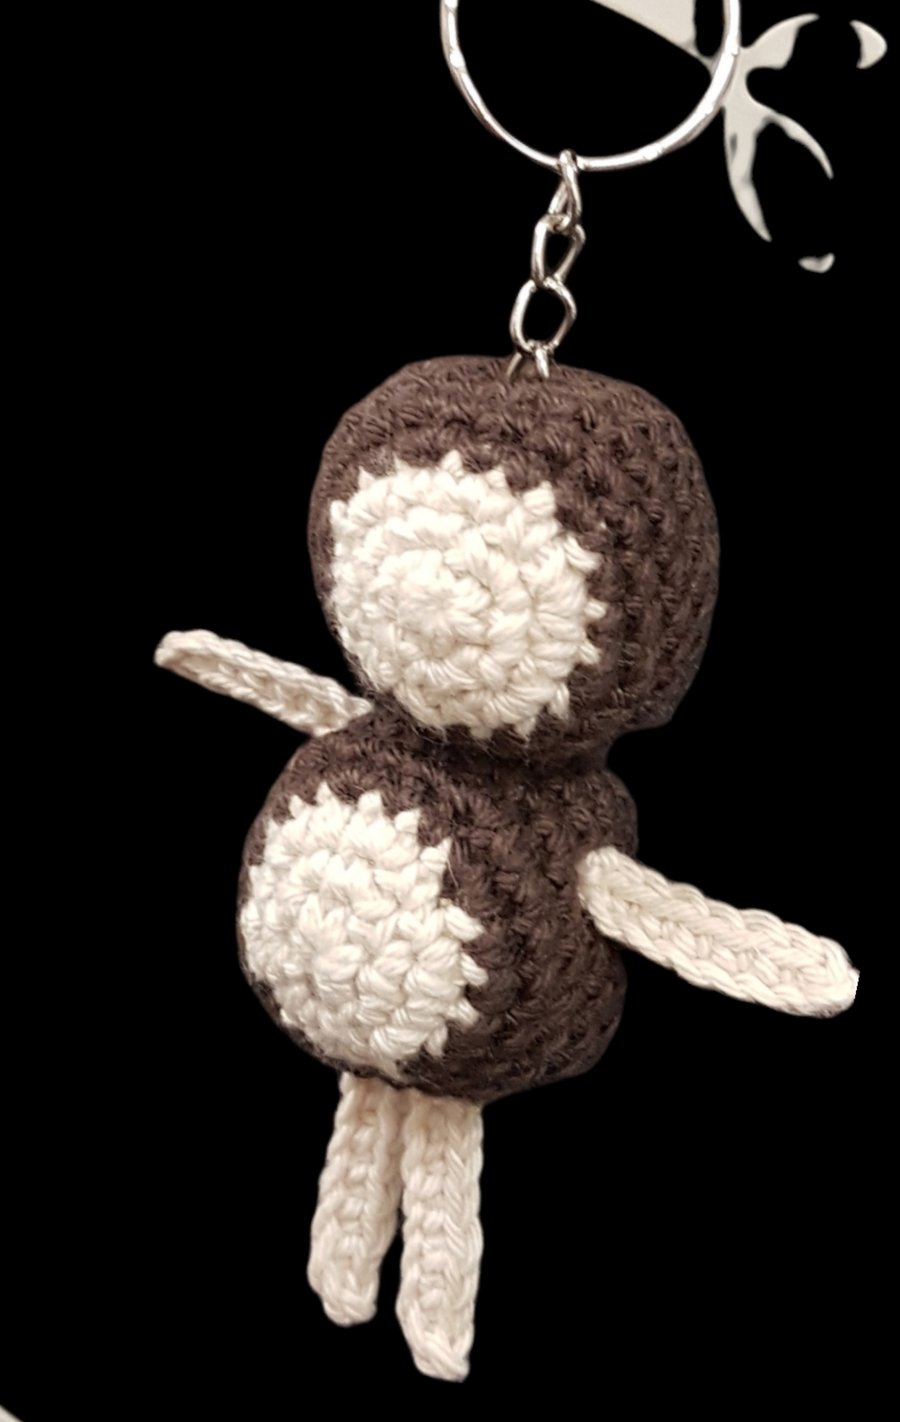 Crochet chestnut man keyring 